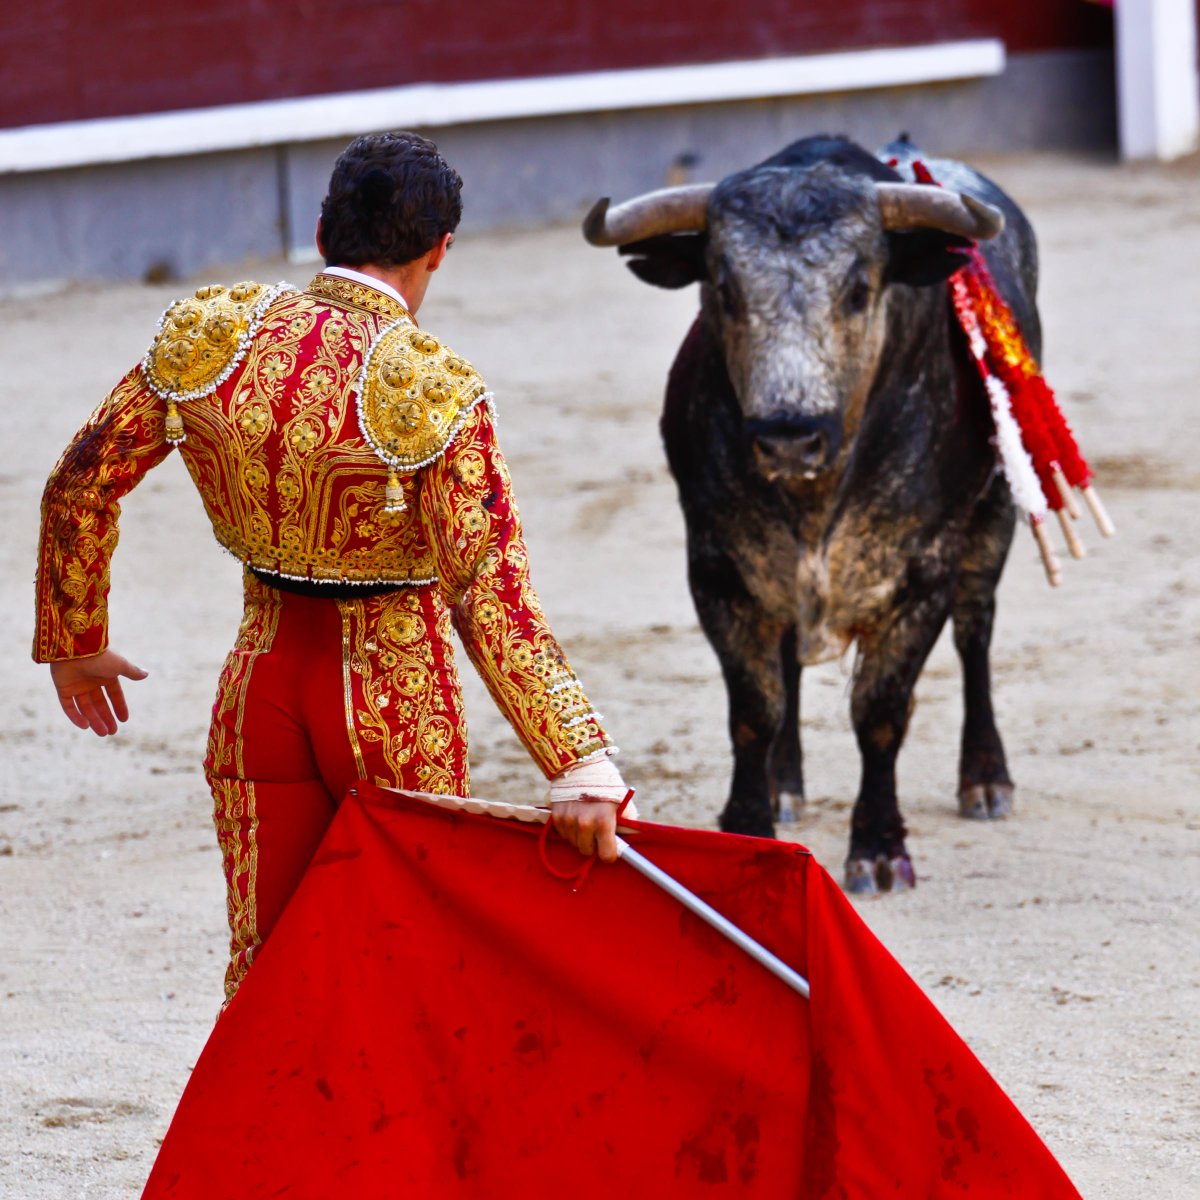 公式 旅らびcom 世界の絶景まとめ على تويتر 闘牛士の衣装 の詳細情報 国 スペイン 民族衣装の詳細 スペインの男性 闘牛士の衣装で チャレーコ というベスト シャキーラ という上着がある 鮮やかな色合いとぴったりとしたズボンが特徴 トレロと